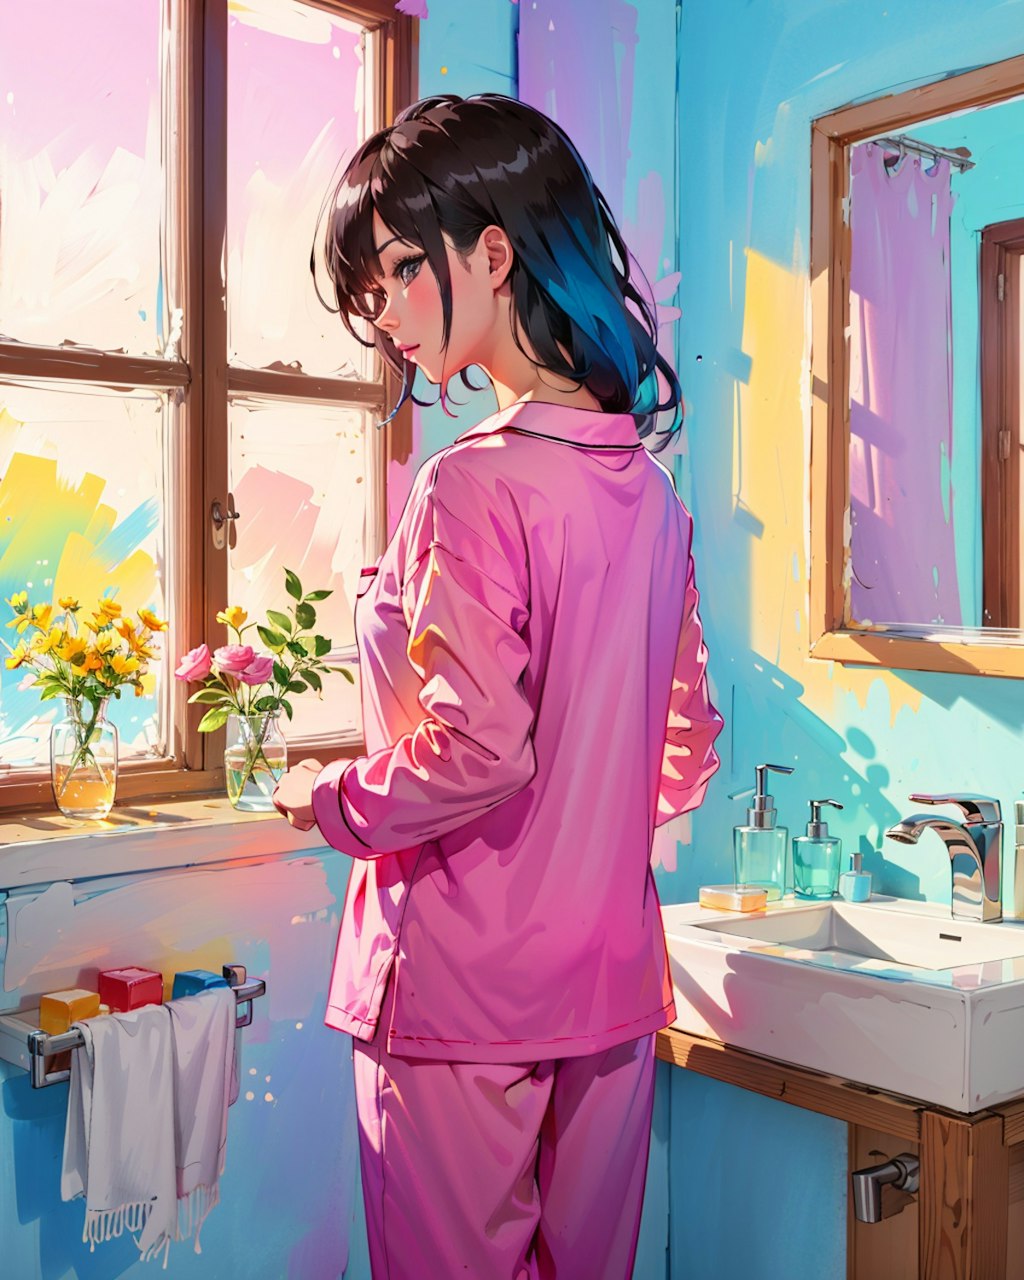 朝起きて出かける準備をするのピンクのパジャマ